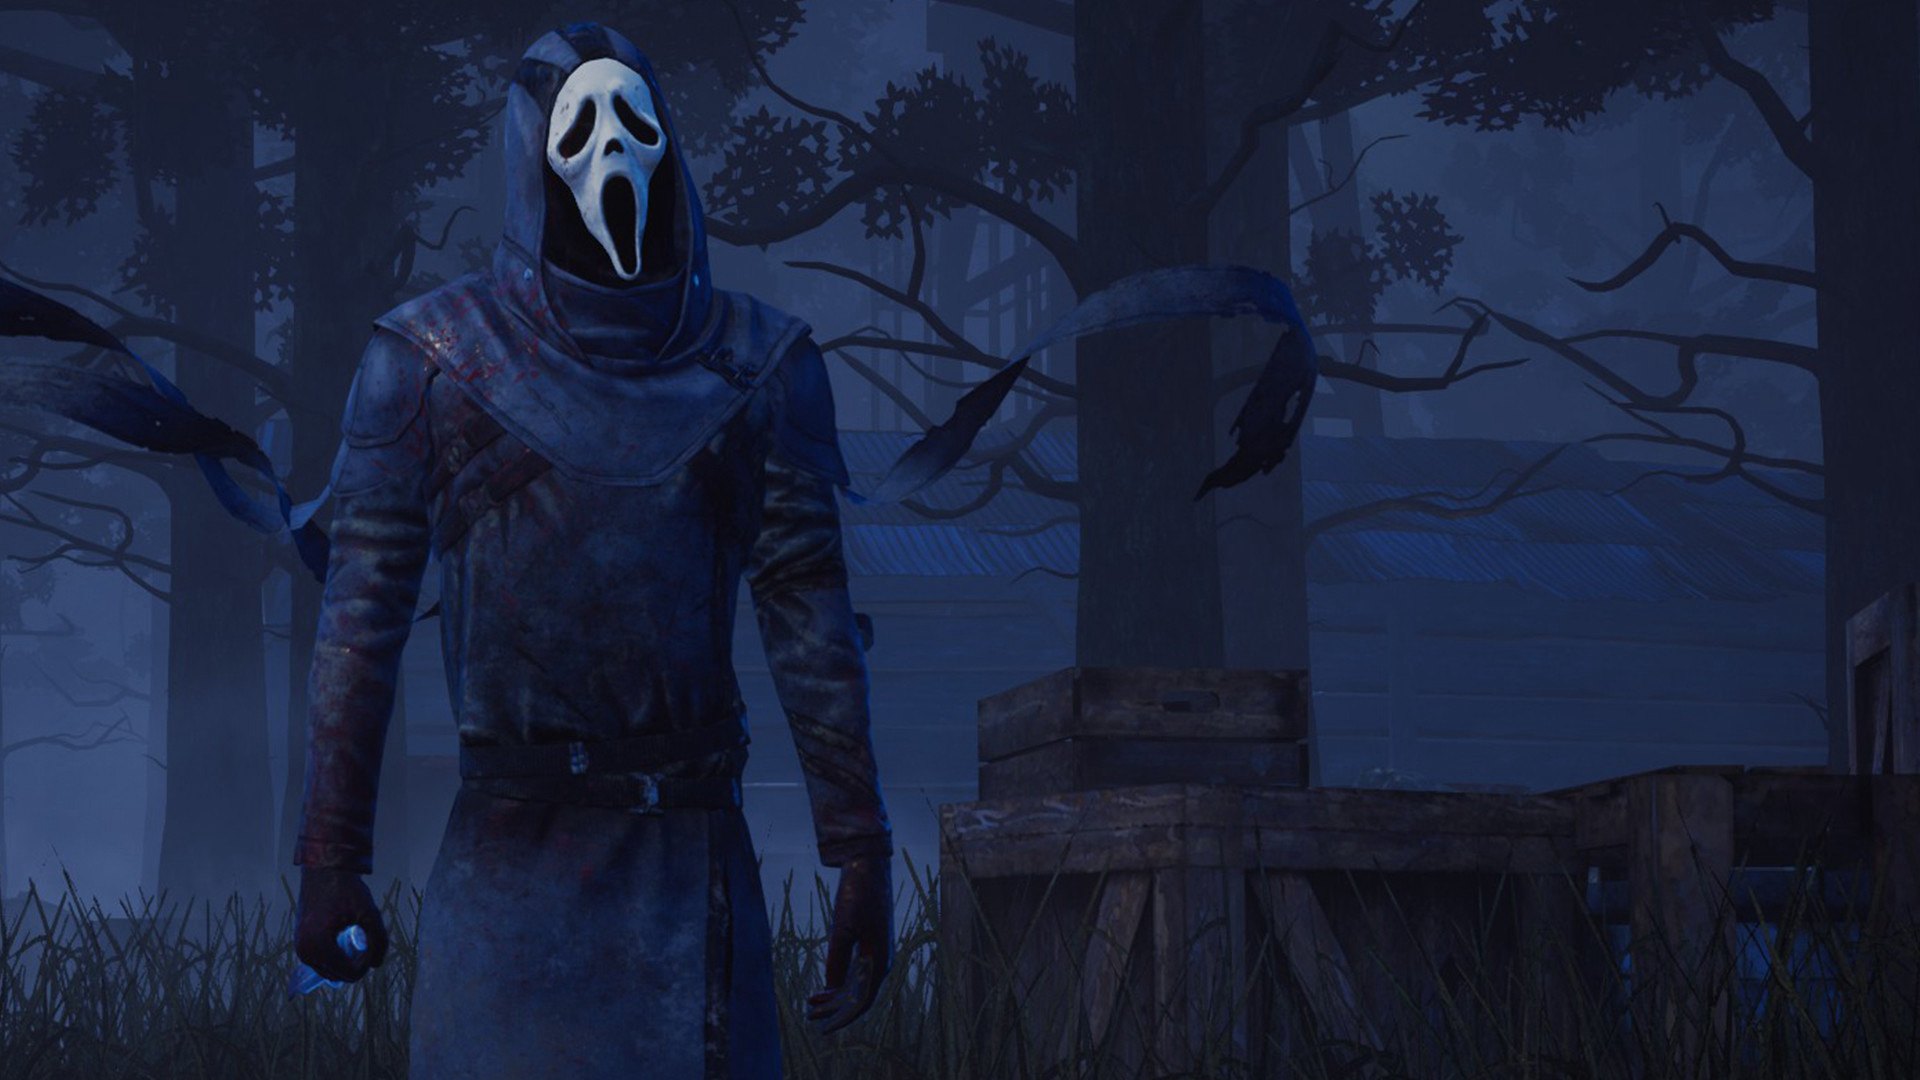 Dead By Daylight - Ghostface DLC EU Steam Altergift